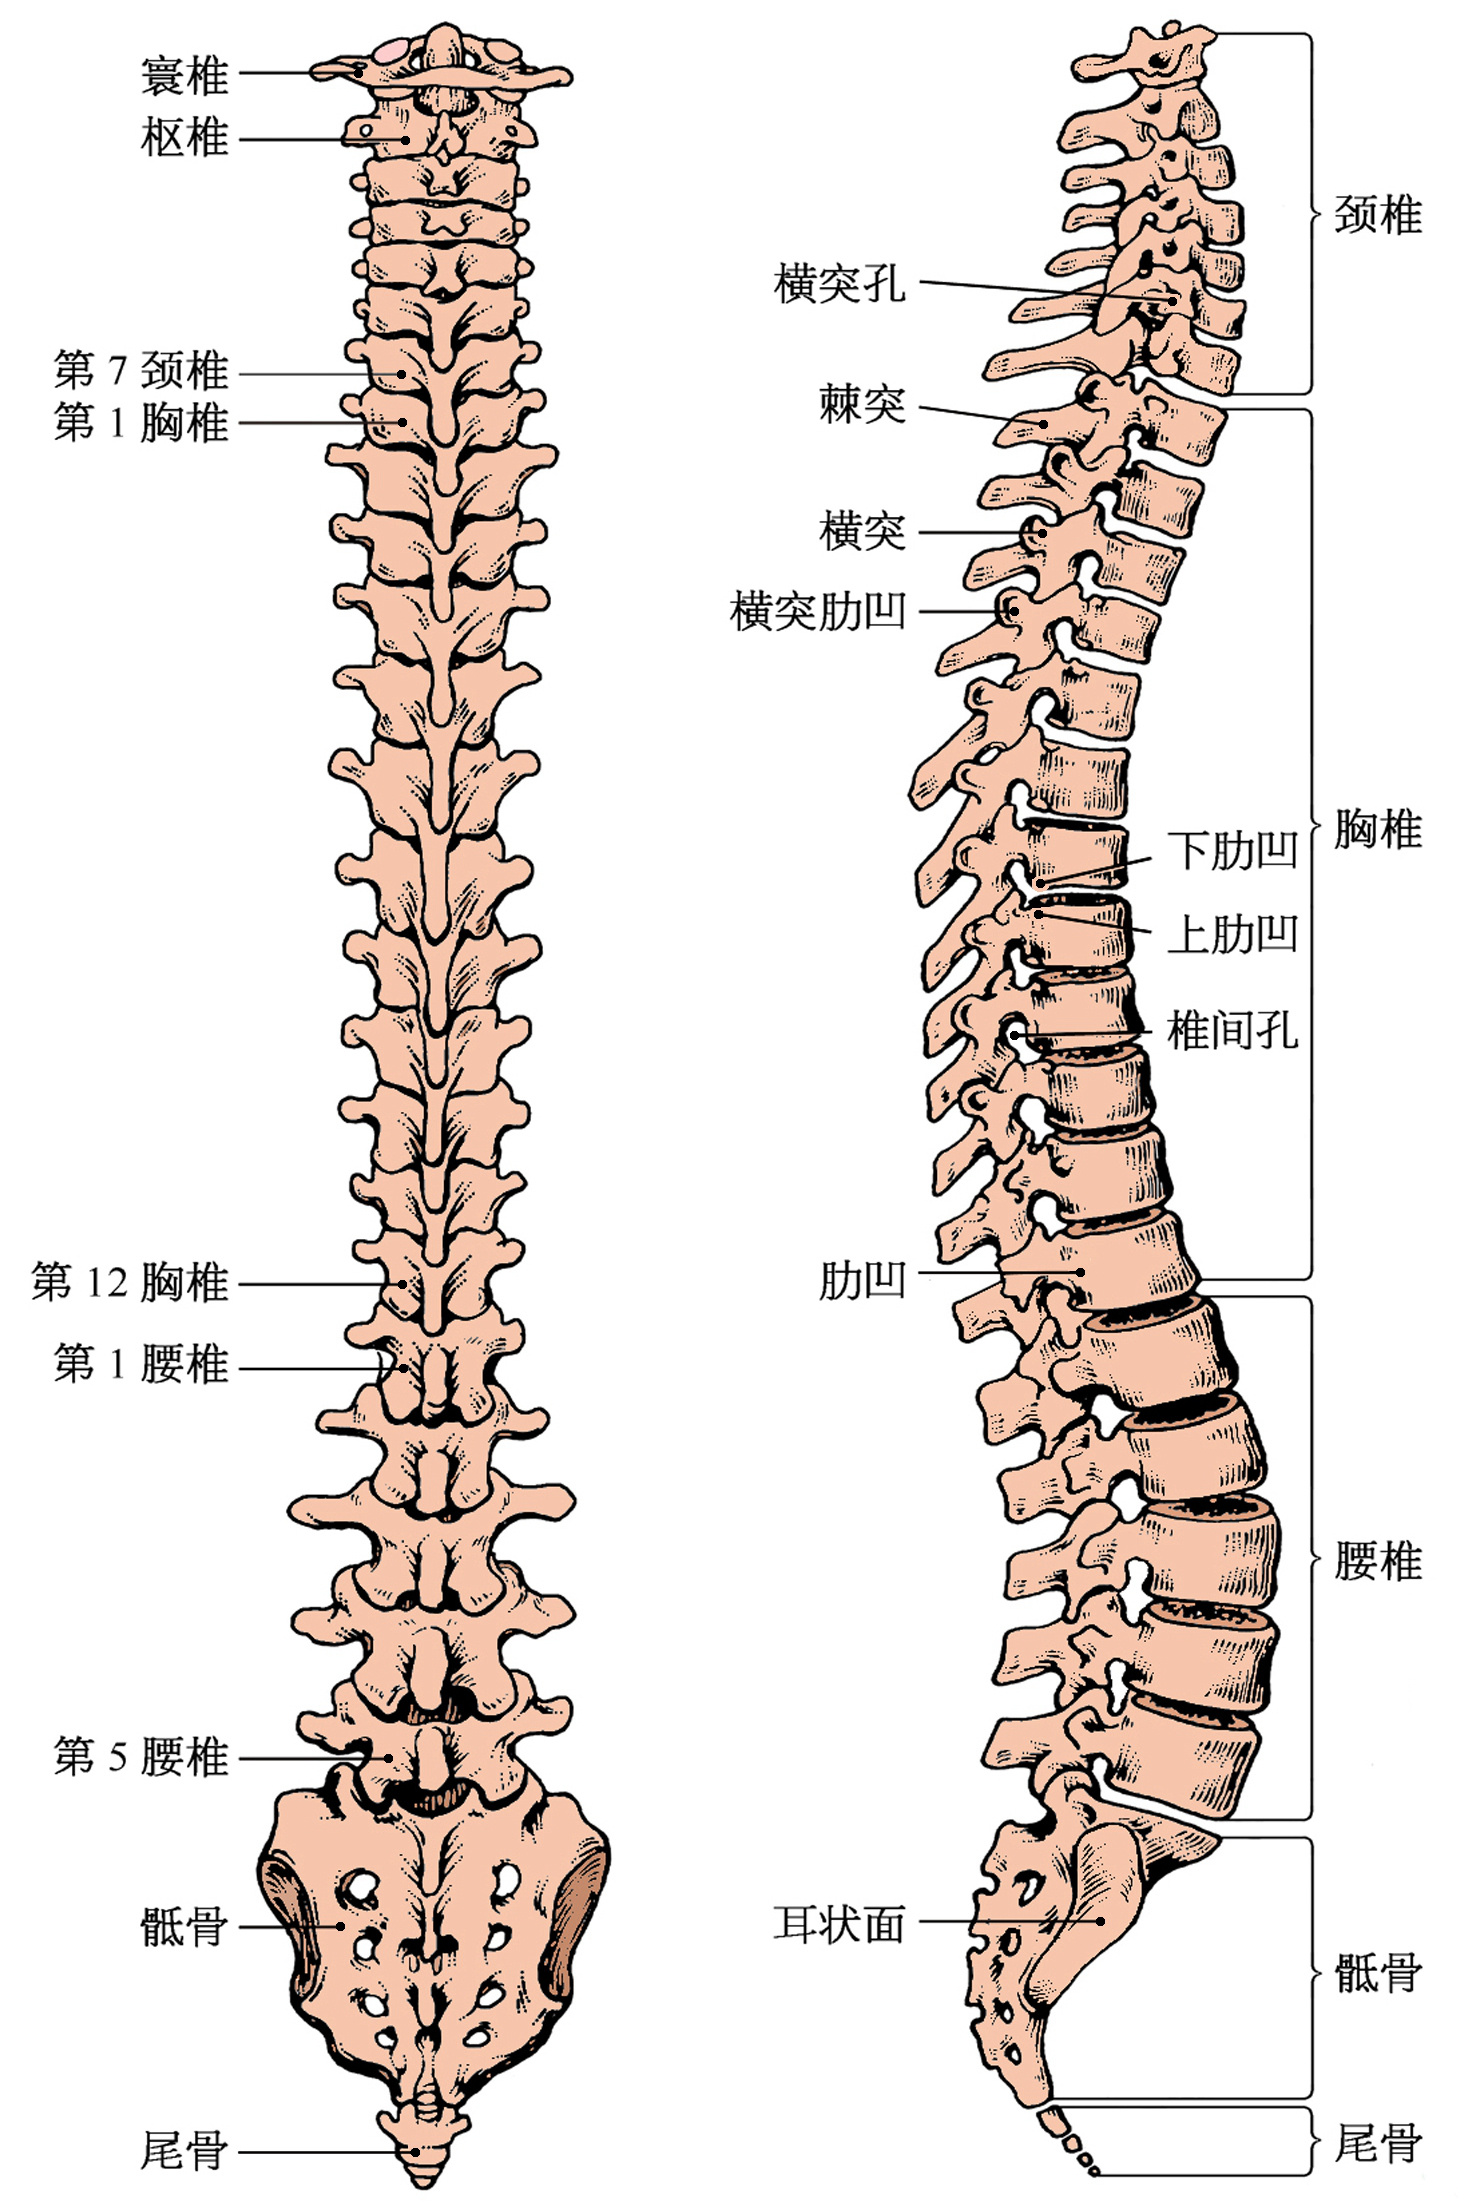 由颈椎,胸椎,腰椎,骶骨,尾骨构成的脊柱,被称为人体的第二生命线,其